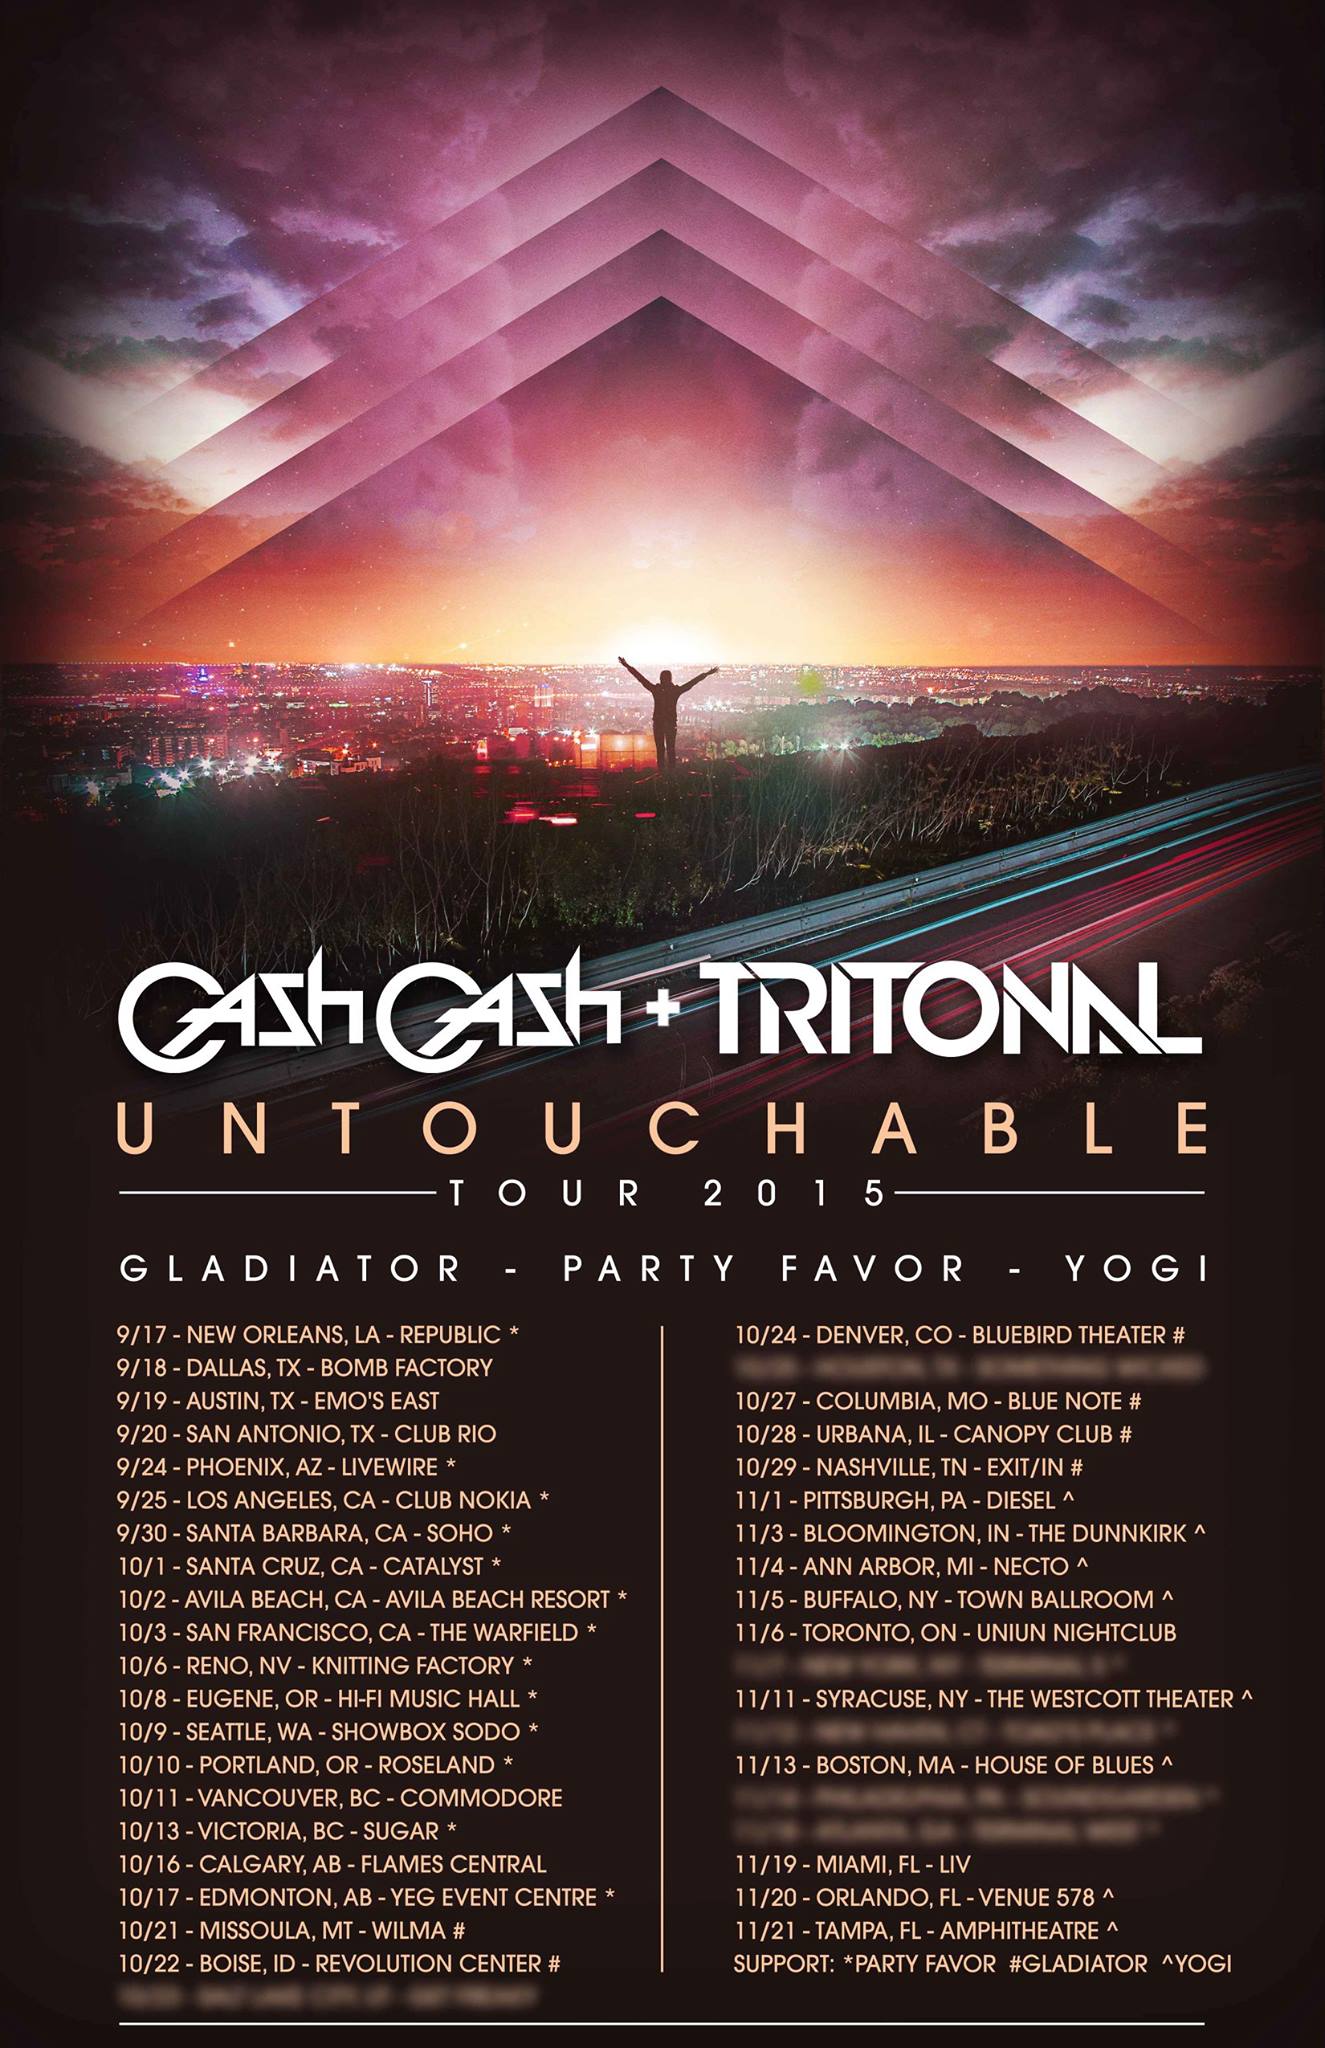 tritonal cash cash untouchable tour 2015